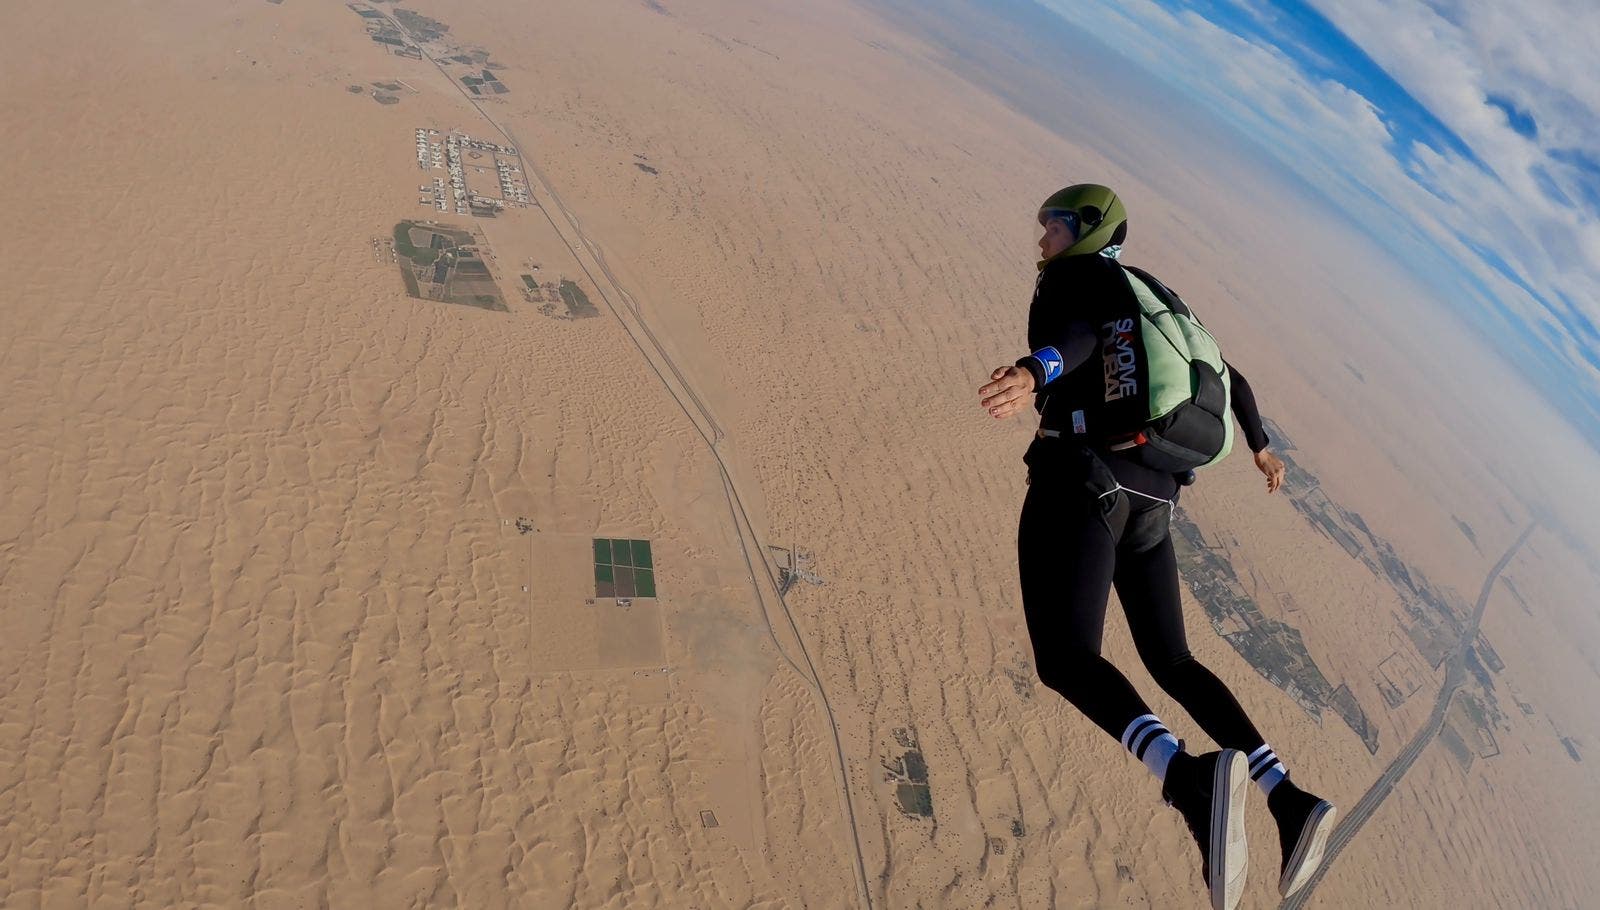 Razan during a parachute jump